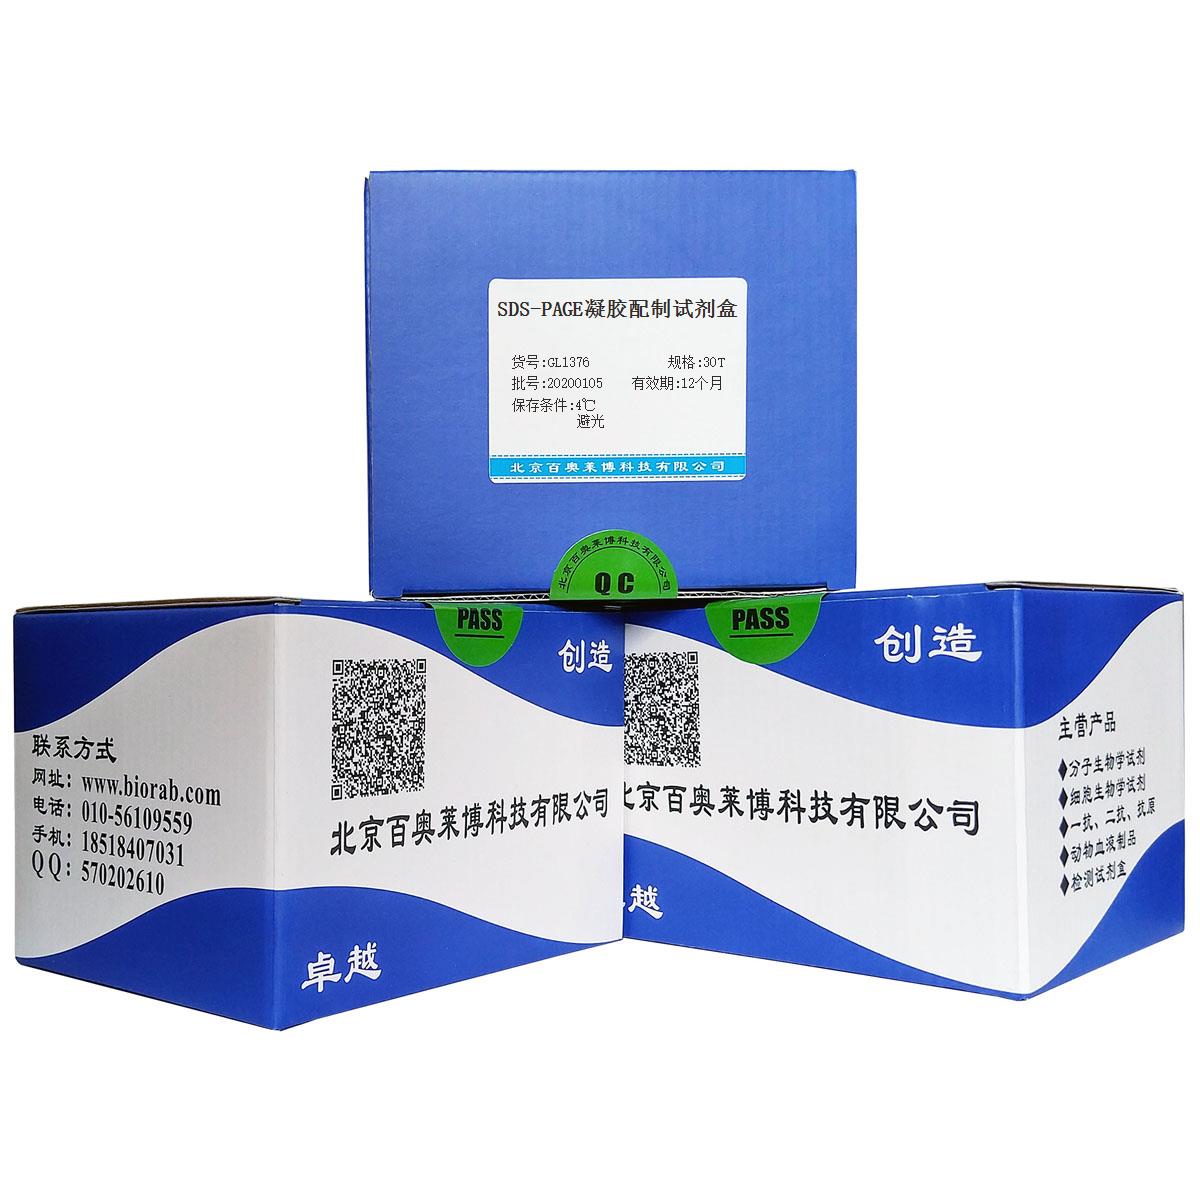 SDS-PAGE凝胶配制试剂盒北京品牌